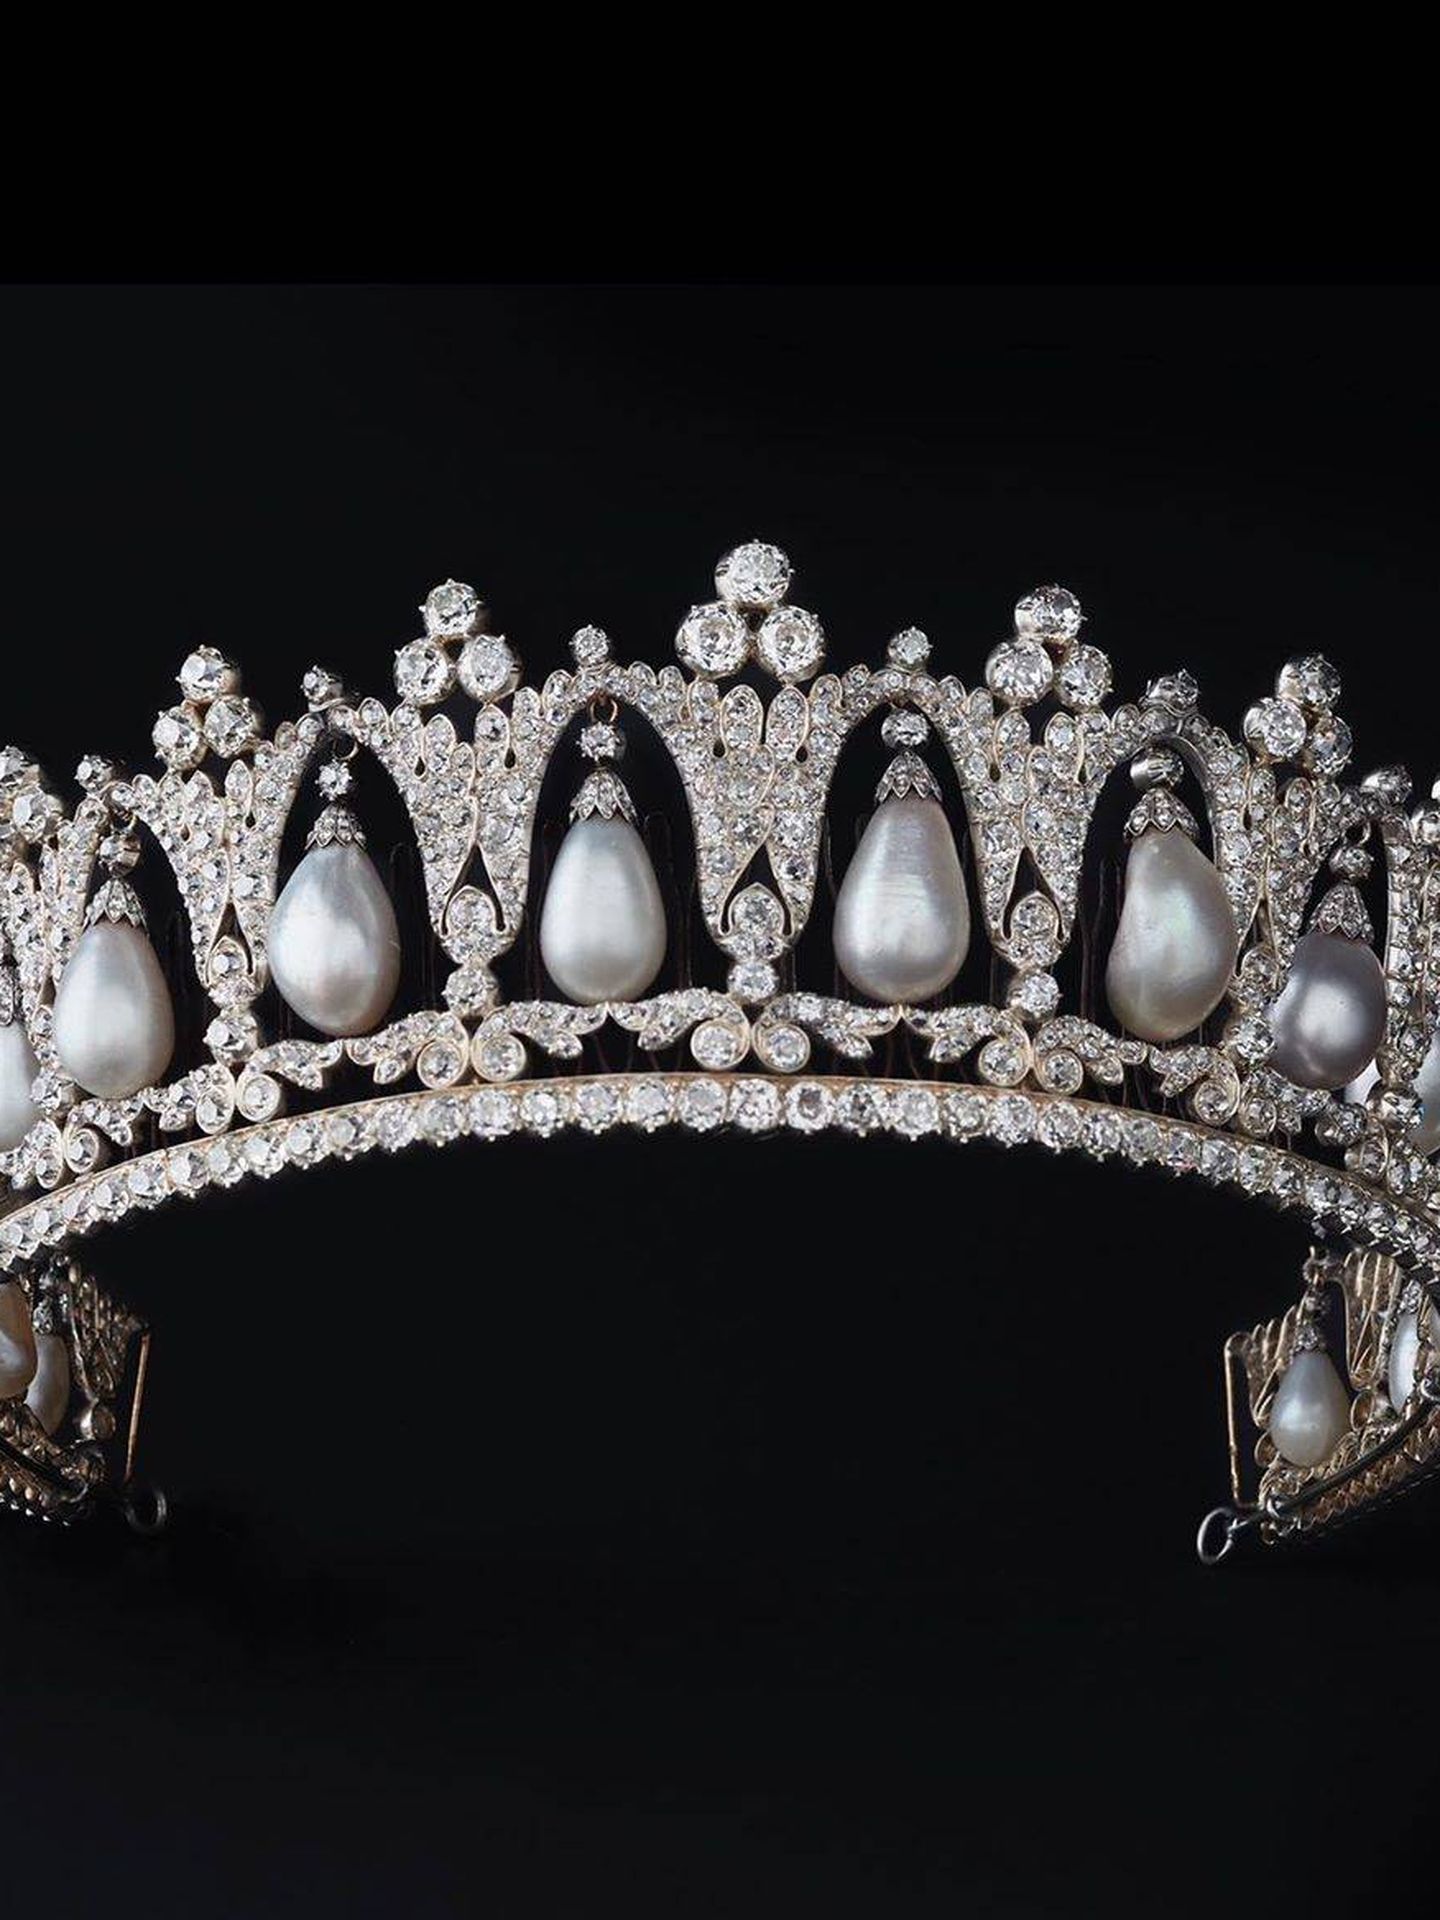 La tiara de perlas. (Casa Real danesa)